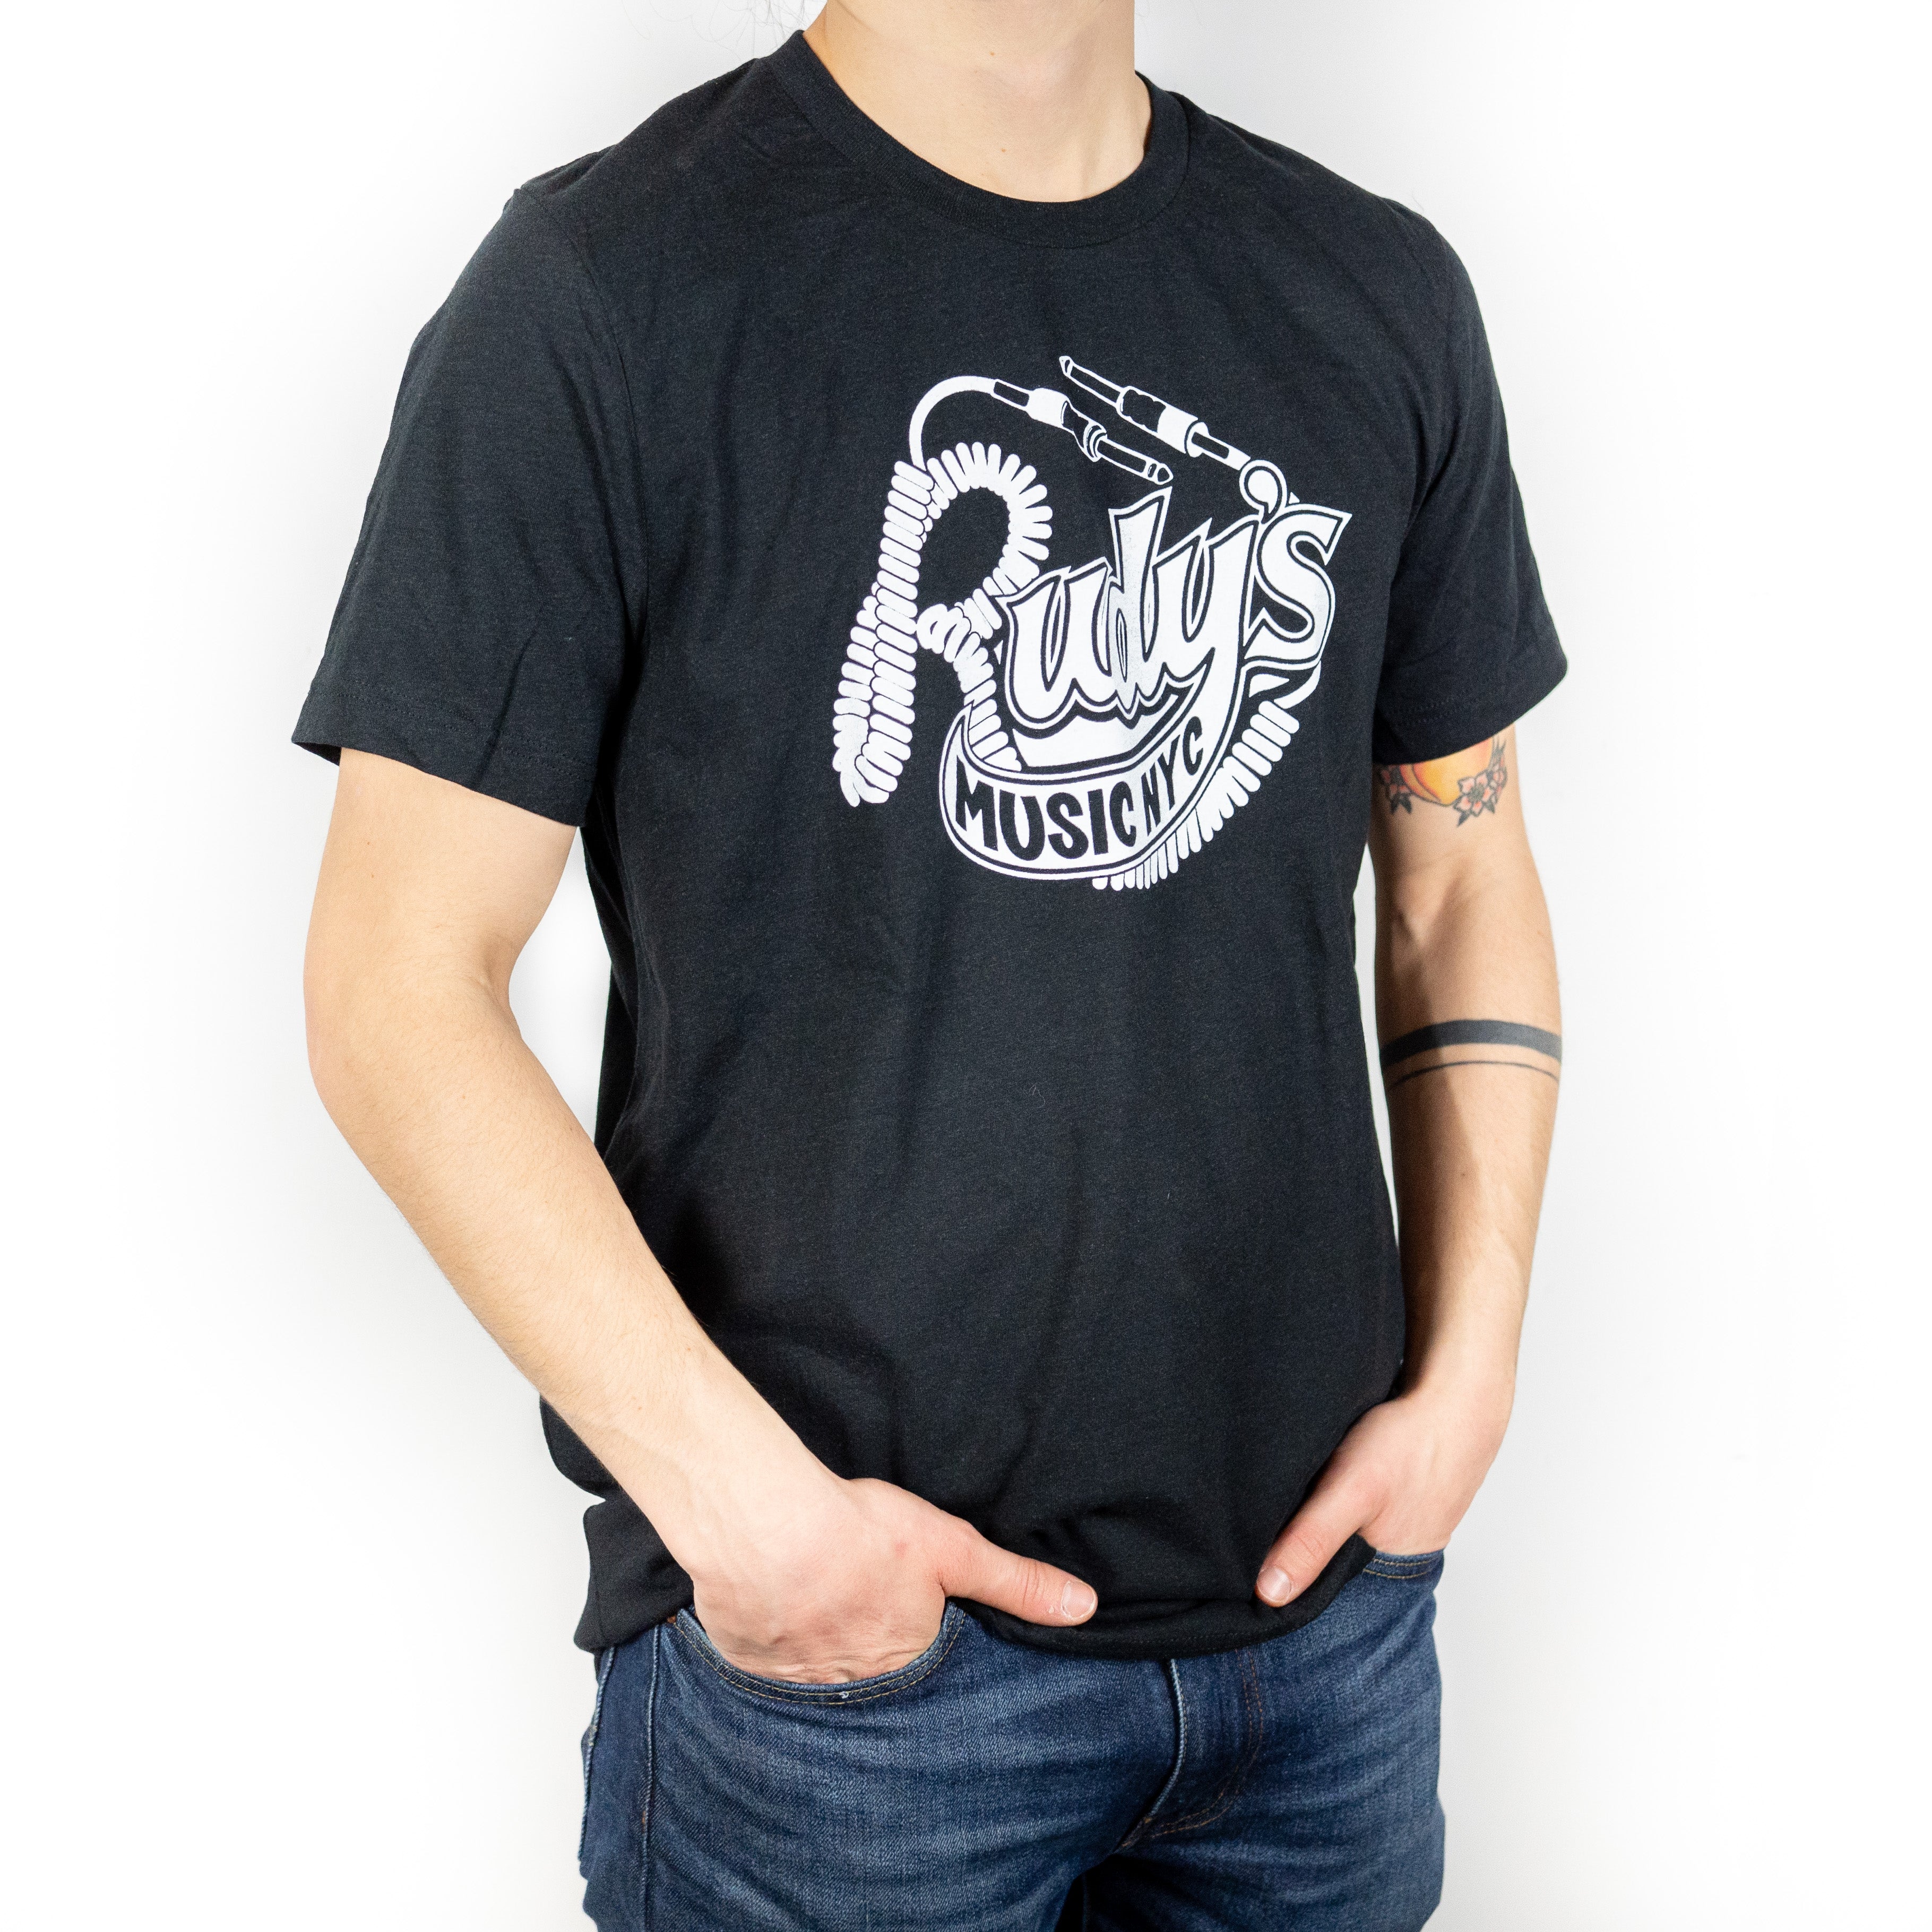 Engel For en dagstur Studerende Rudy's Music T-Shirt Men's — Rudy's Music Soho